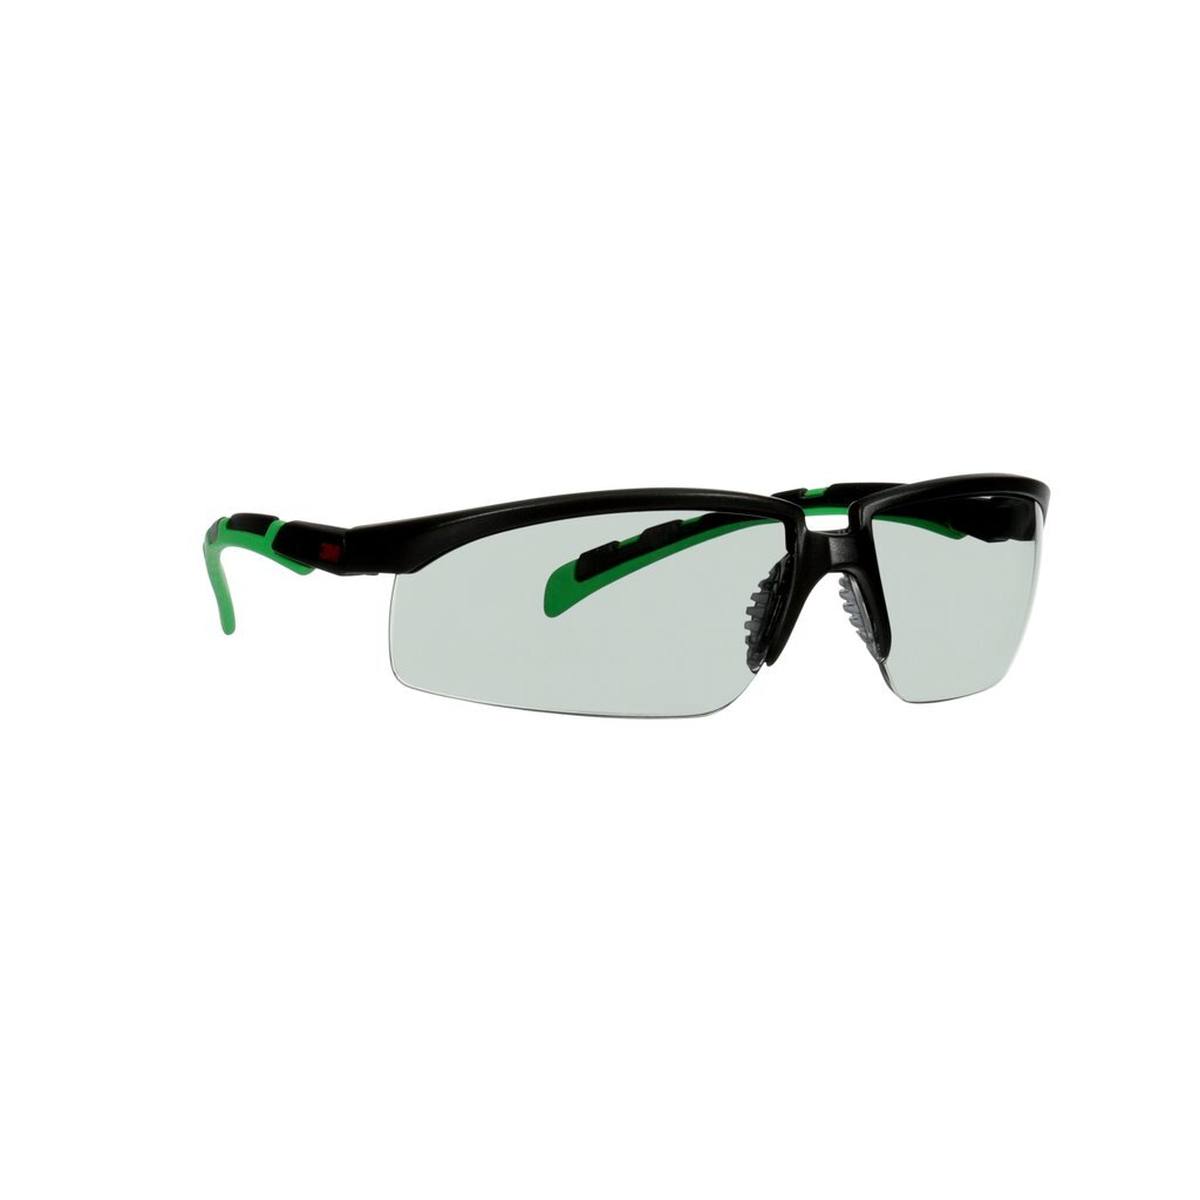 3M Solus 2000 veiligheidsbril, zwart/groen montuur, antikrascoating + (K), grijs glas IR 1.7, S2017ASP-BLK